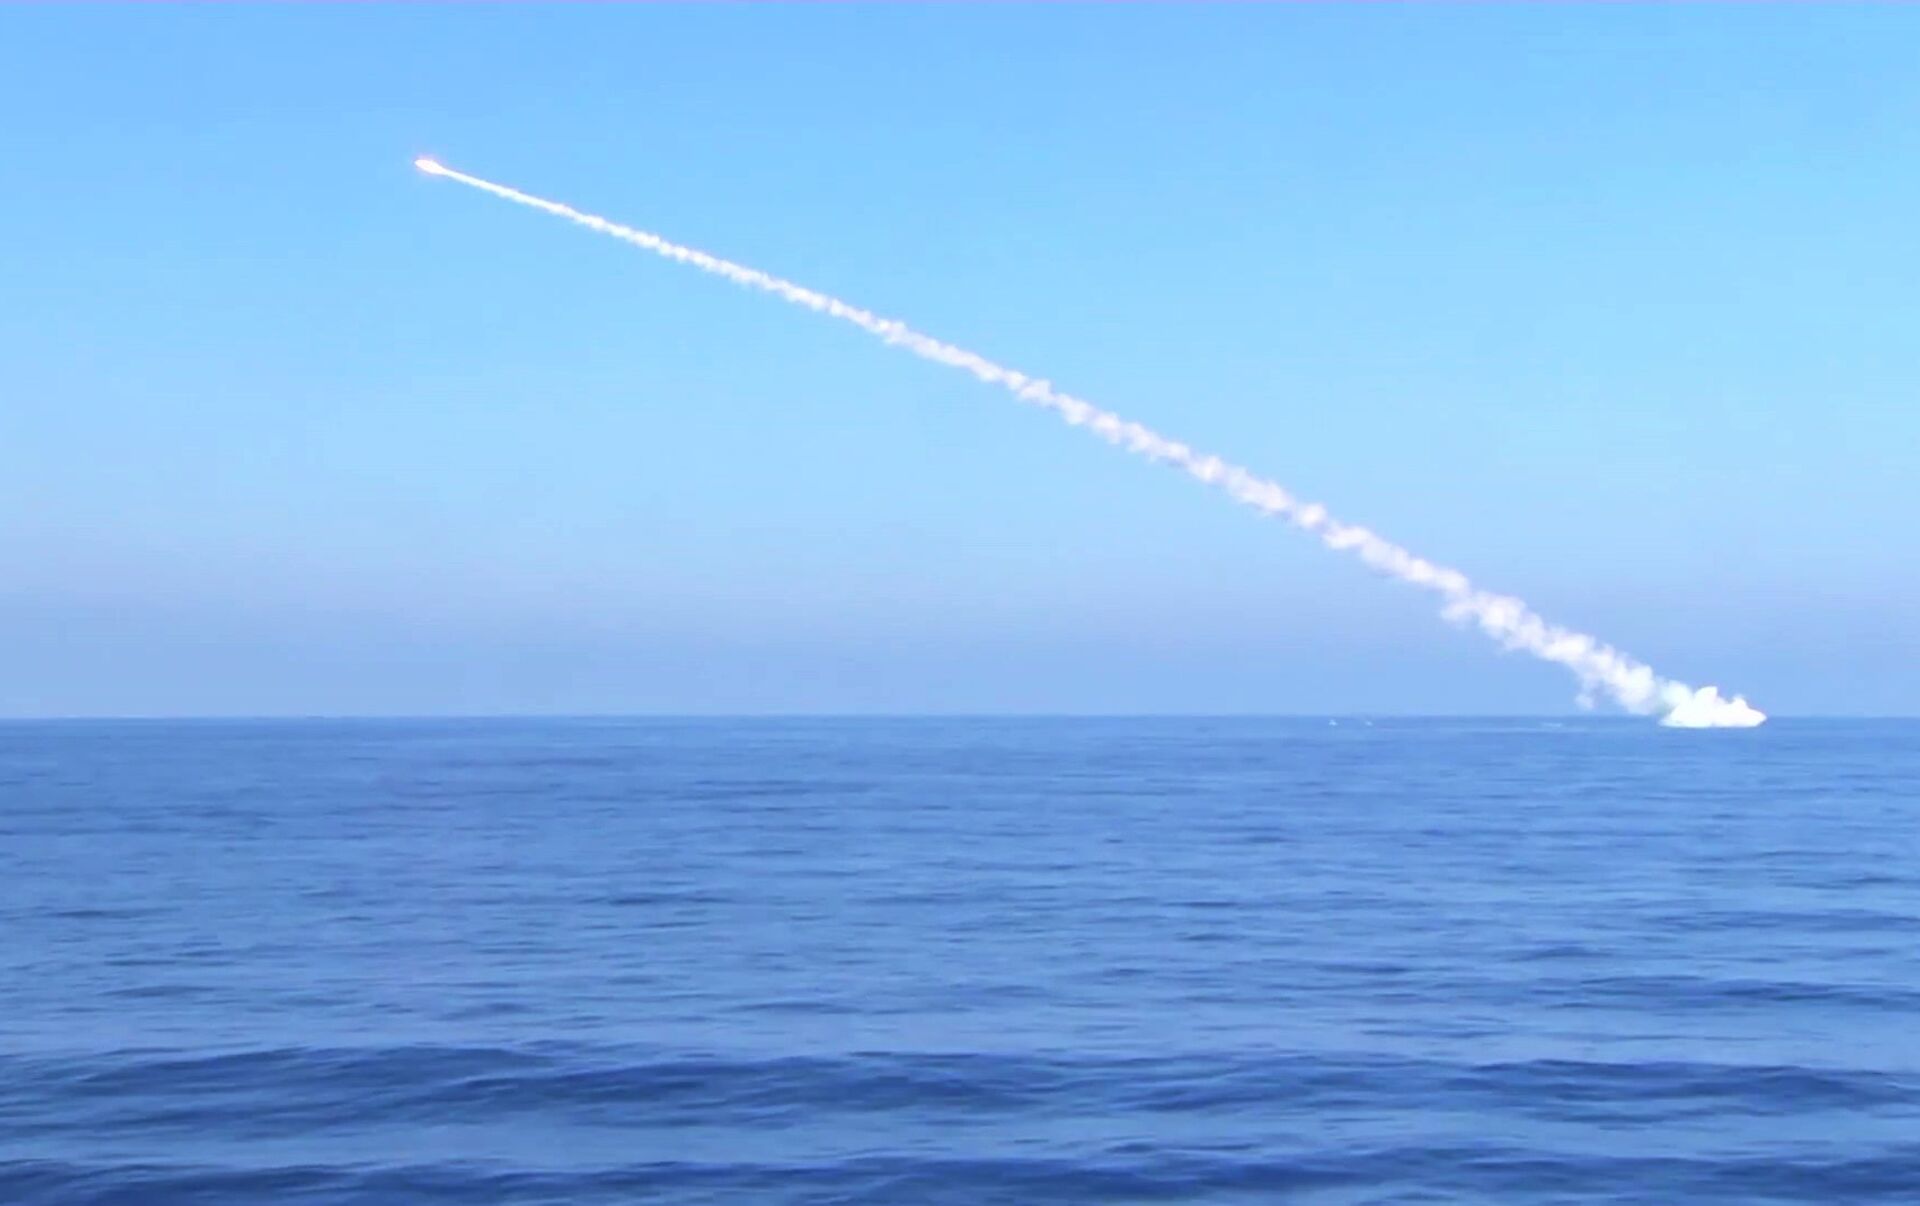 Страна-агрессор пополнила ракетами "Калибр" фрегат в Черном море